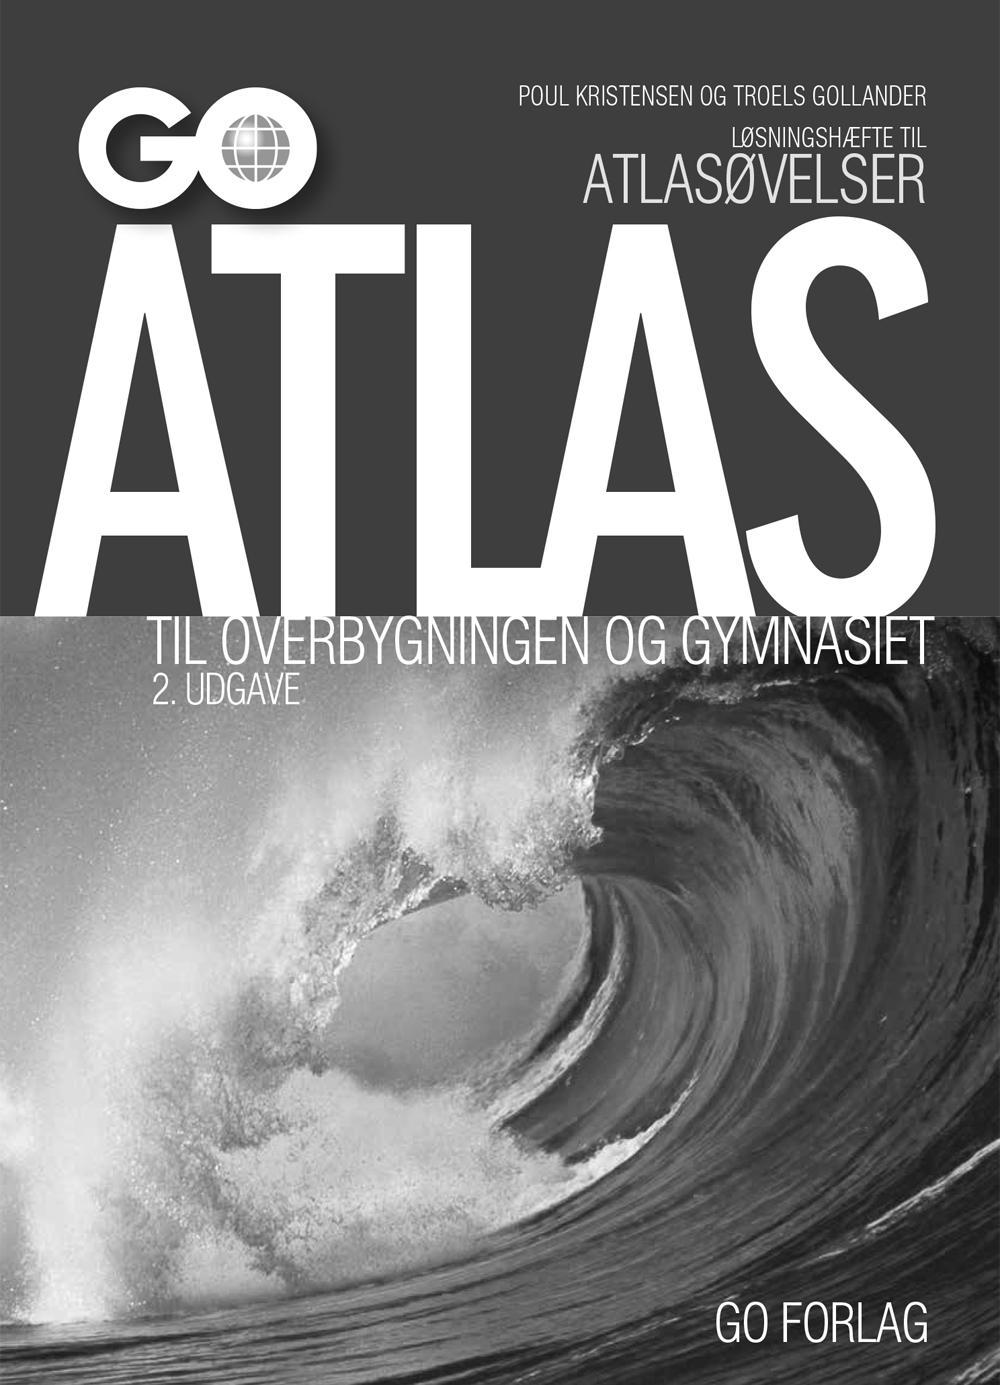 Forside af løsningshæfte til atlasøvelser GO Atlas til overbygningen og gymnasiet - 2. udgave.